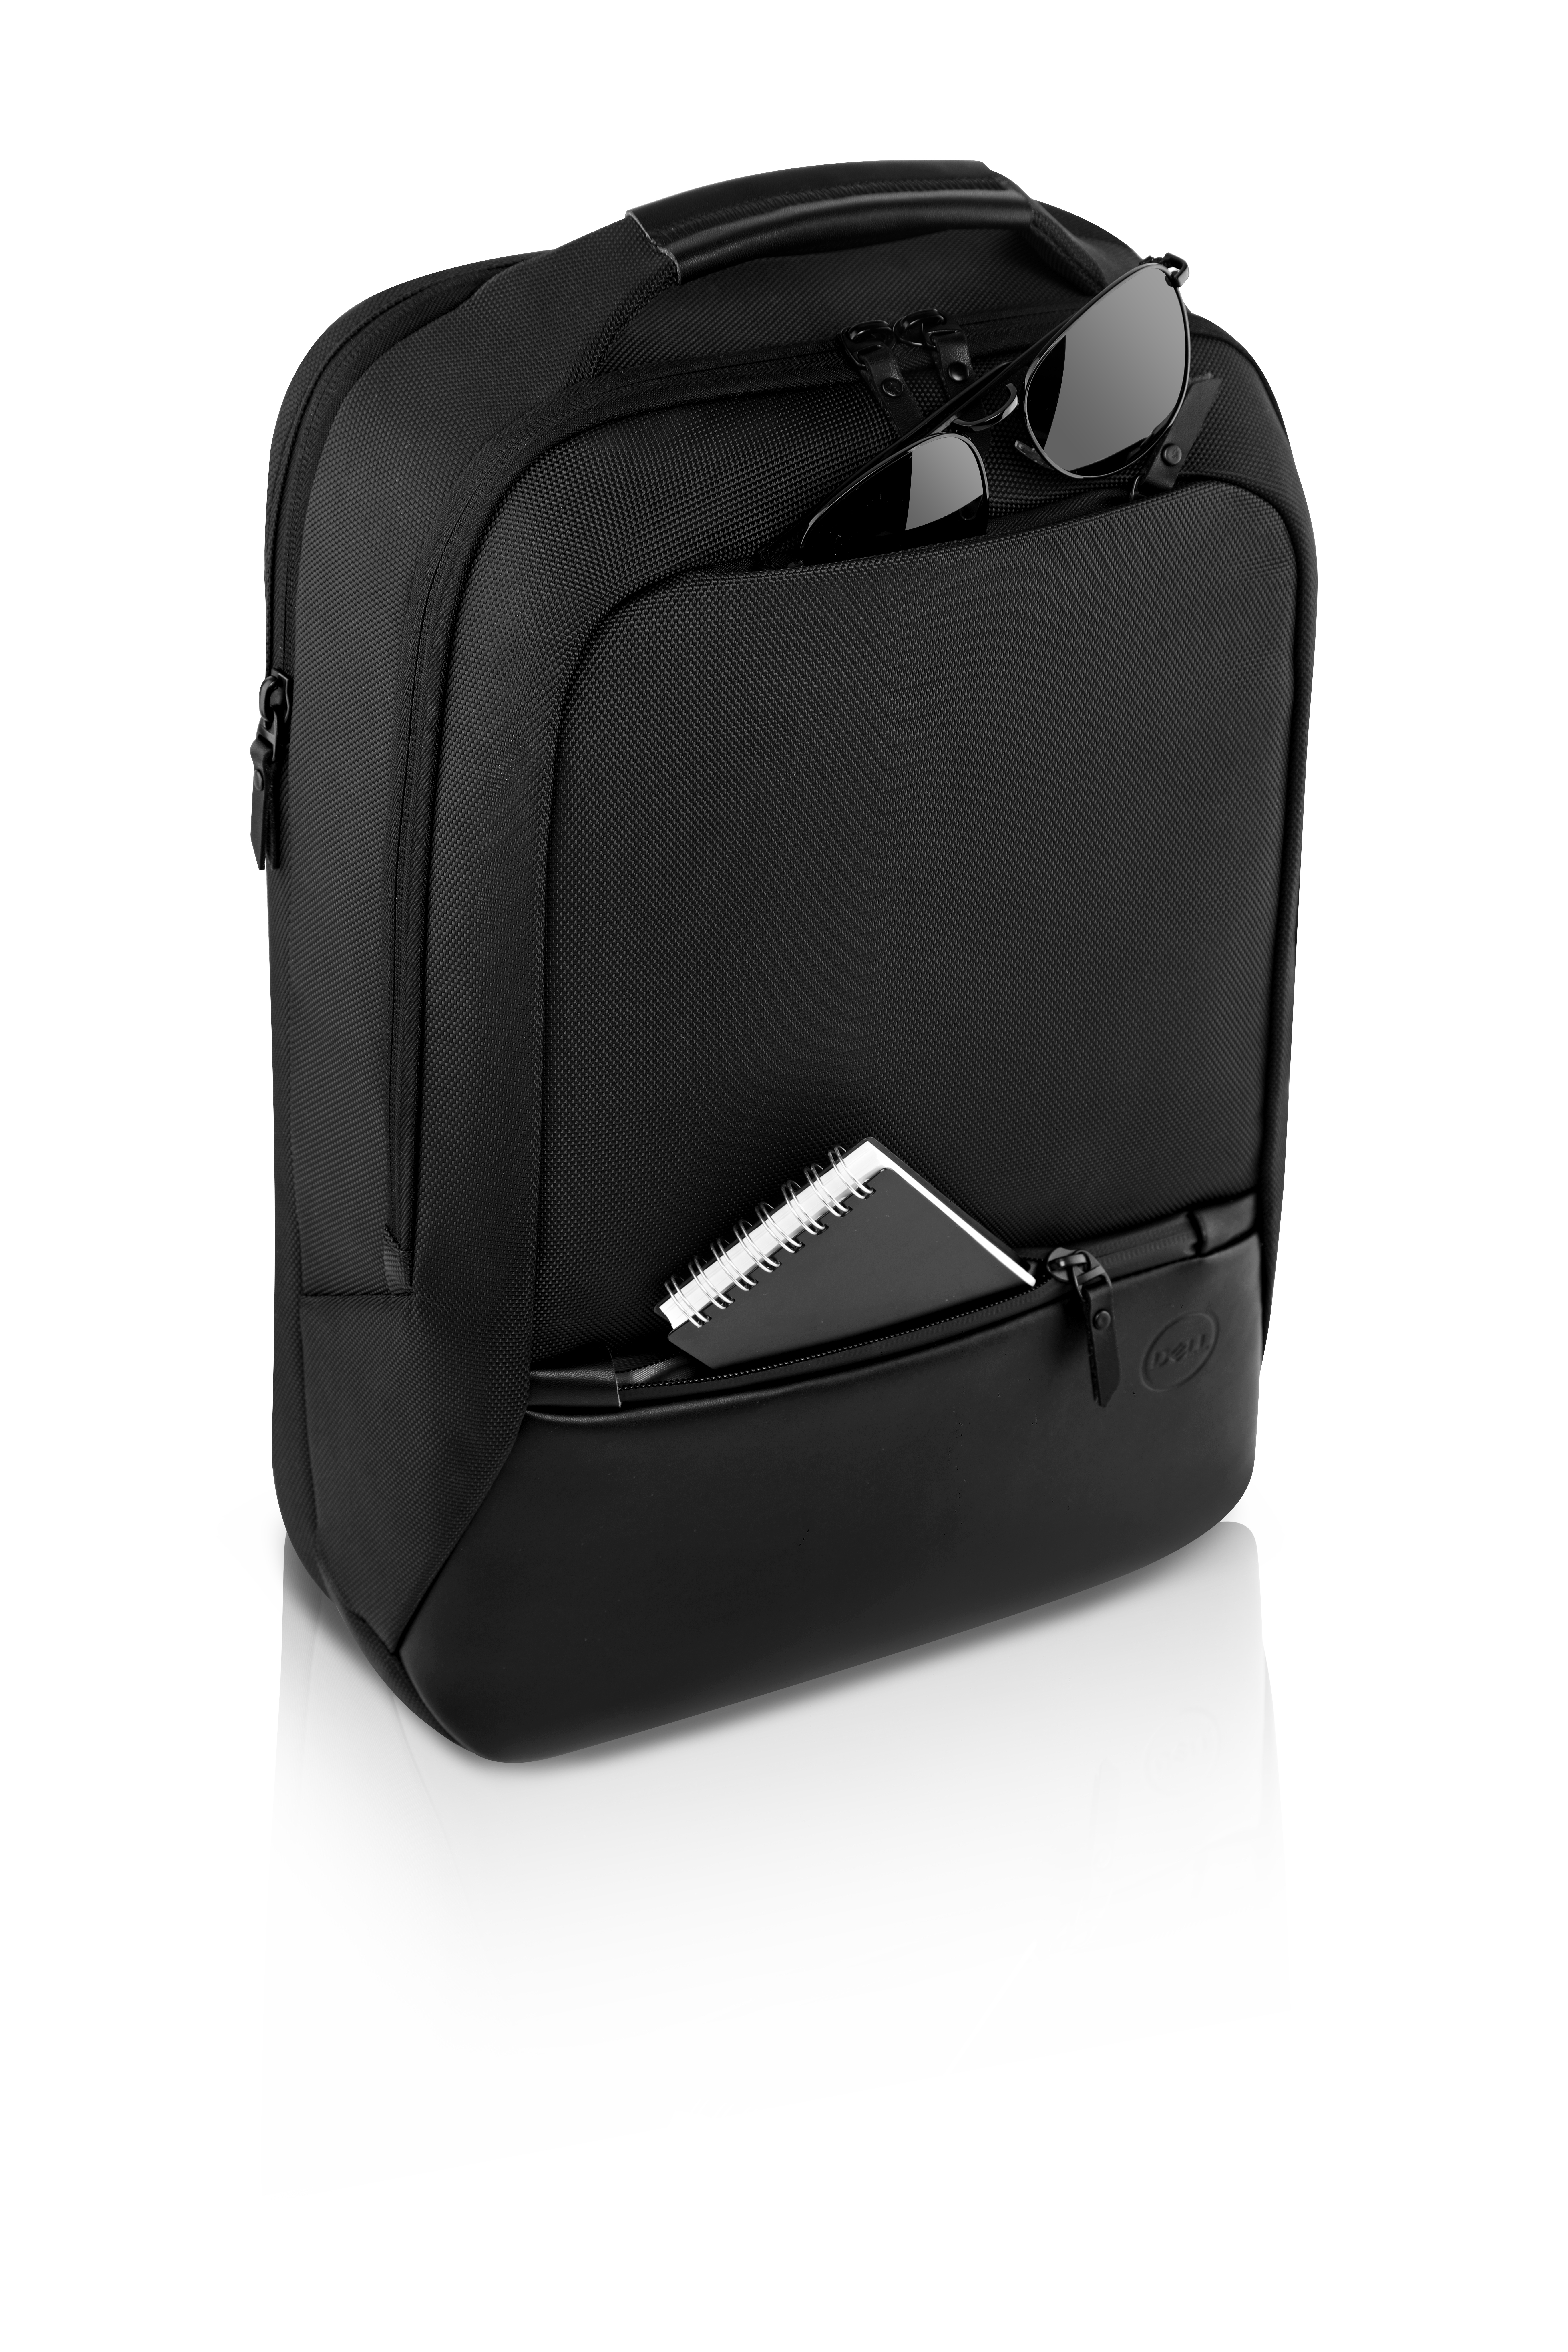 Dell Premier Slim Backpack 15 - Notebook-Rucksack - 38.1 cm (15")